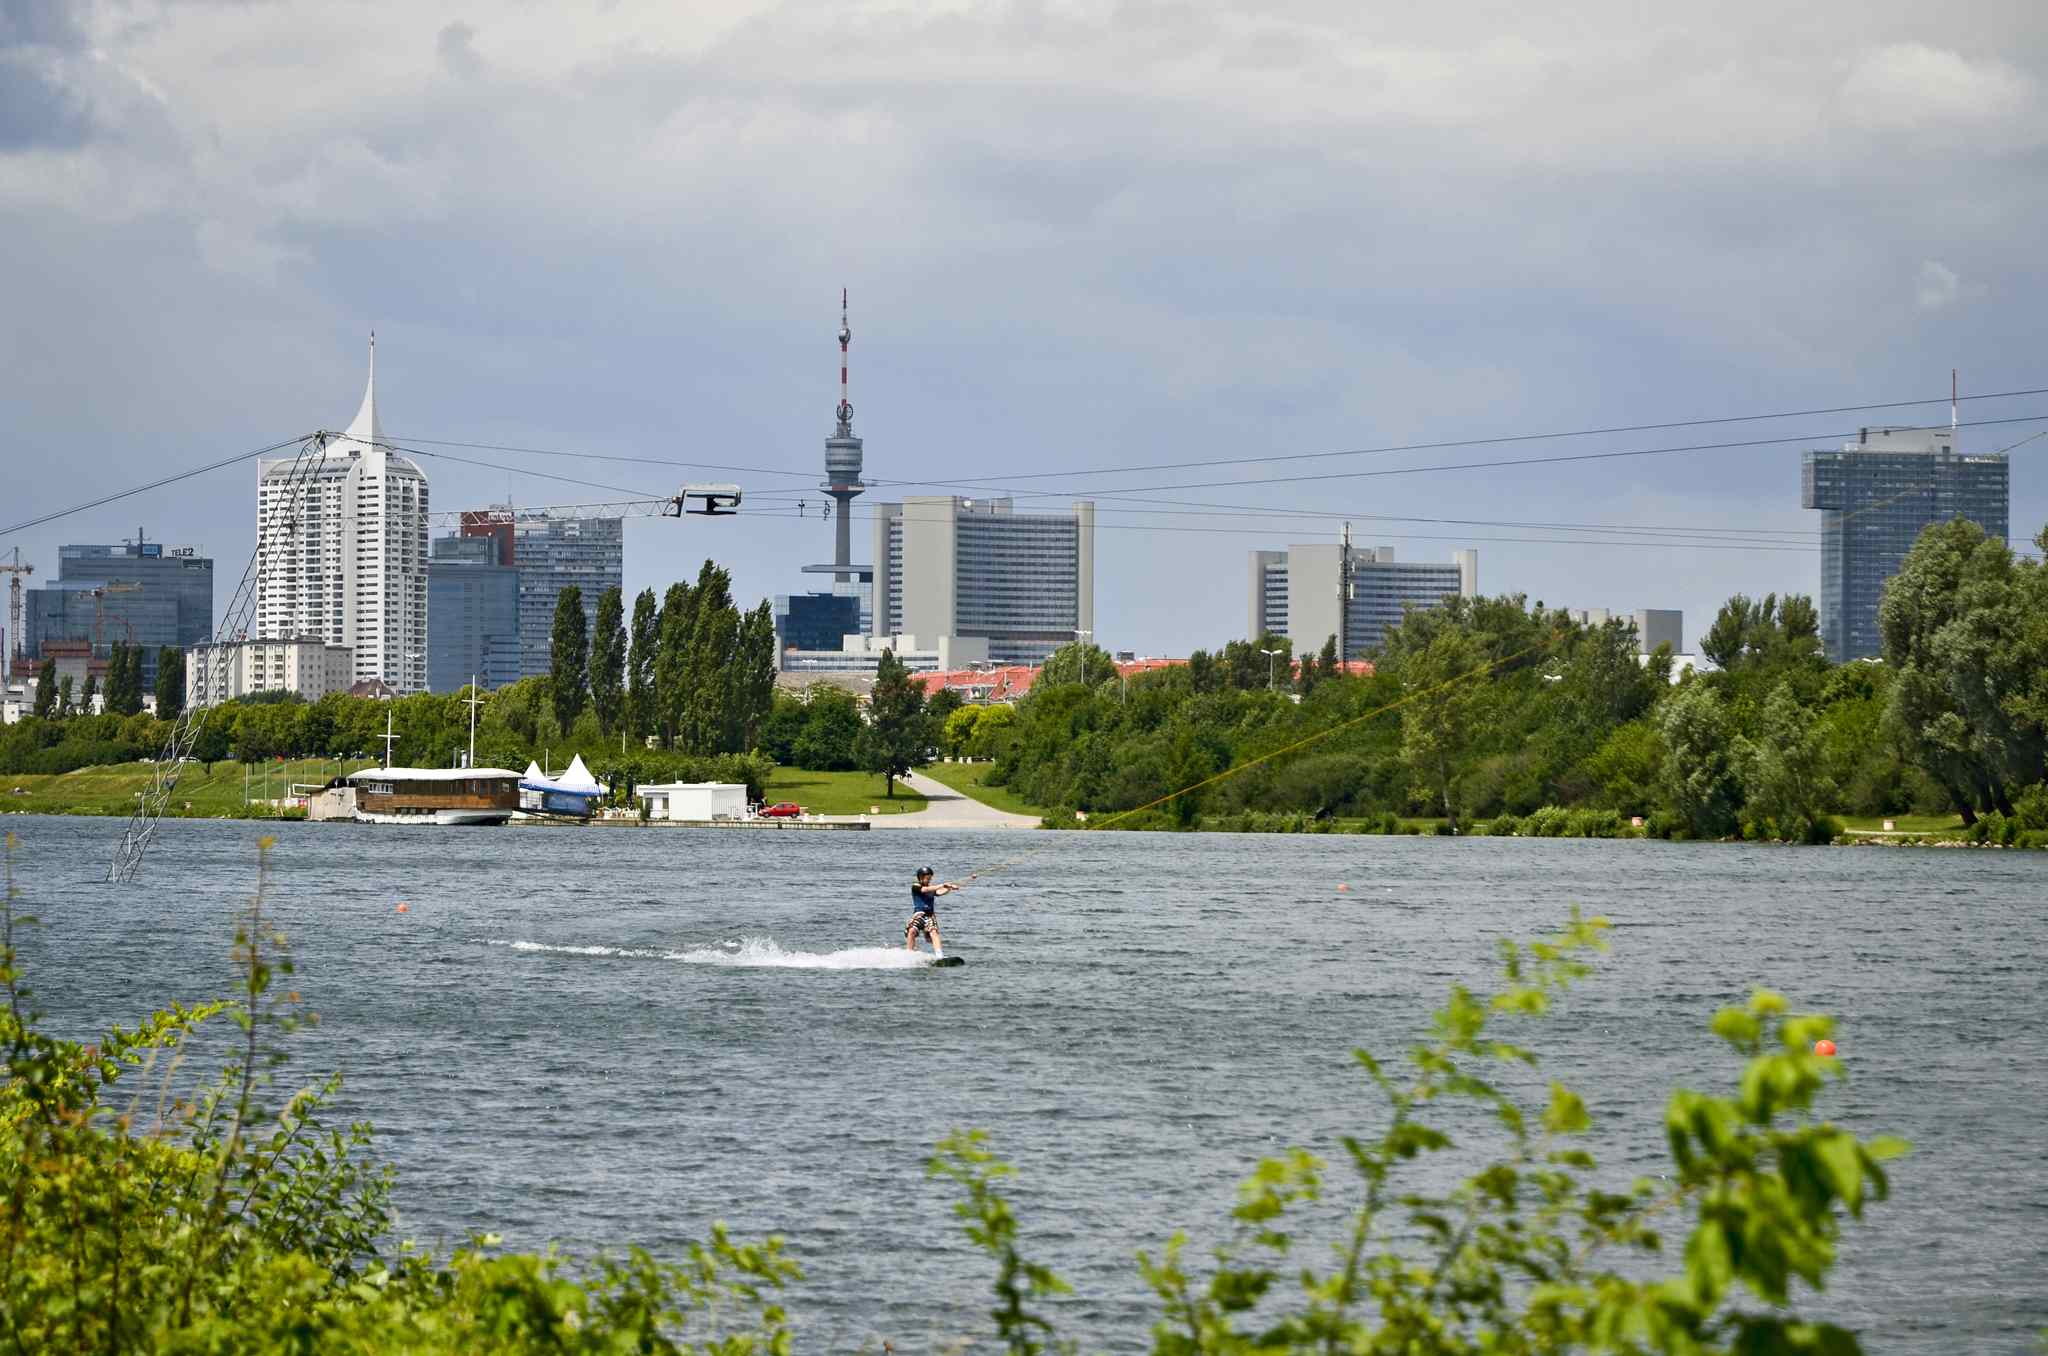 Wakeboardfahrer am Wakeboardlift, im Hintergrund die Skyline der Donaustadt